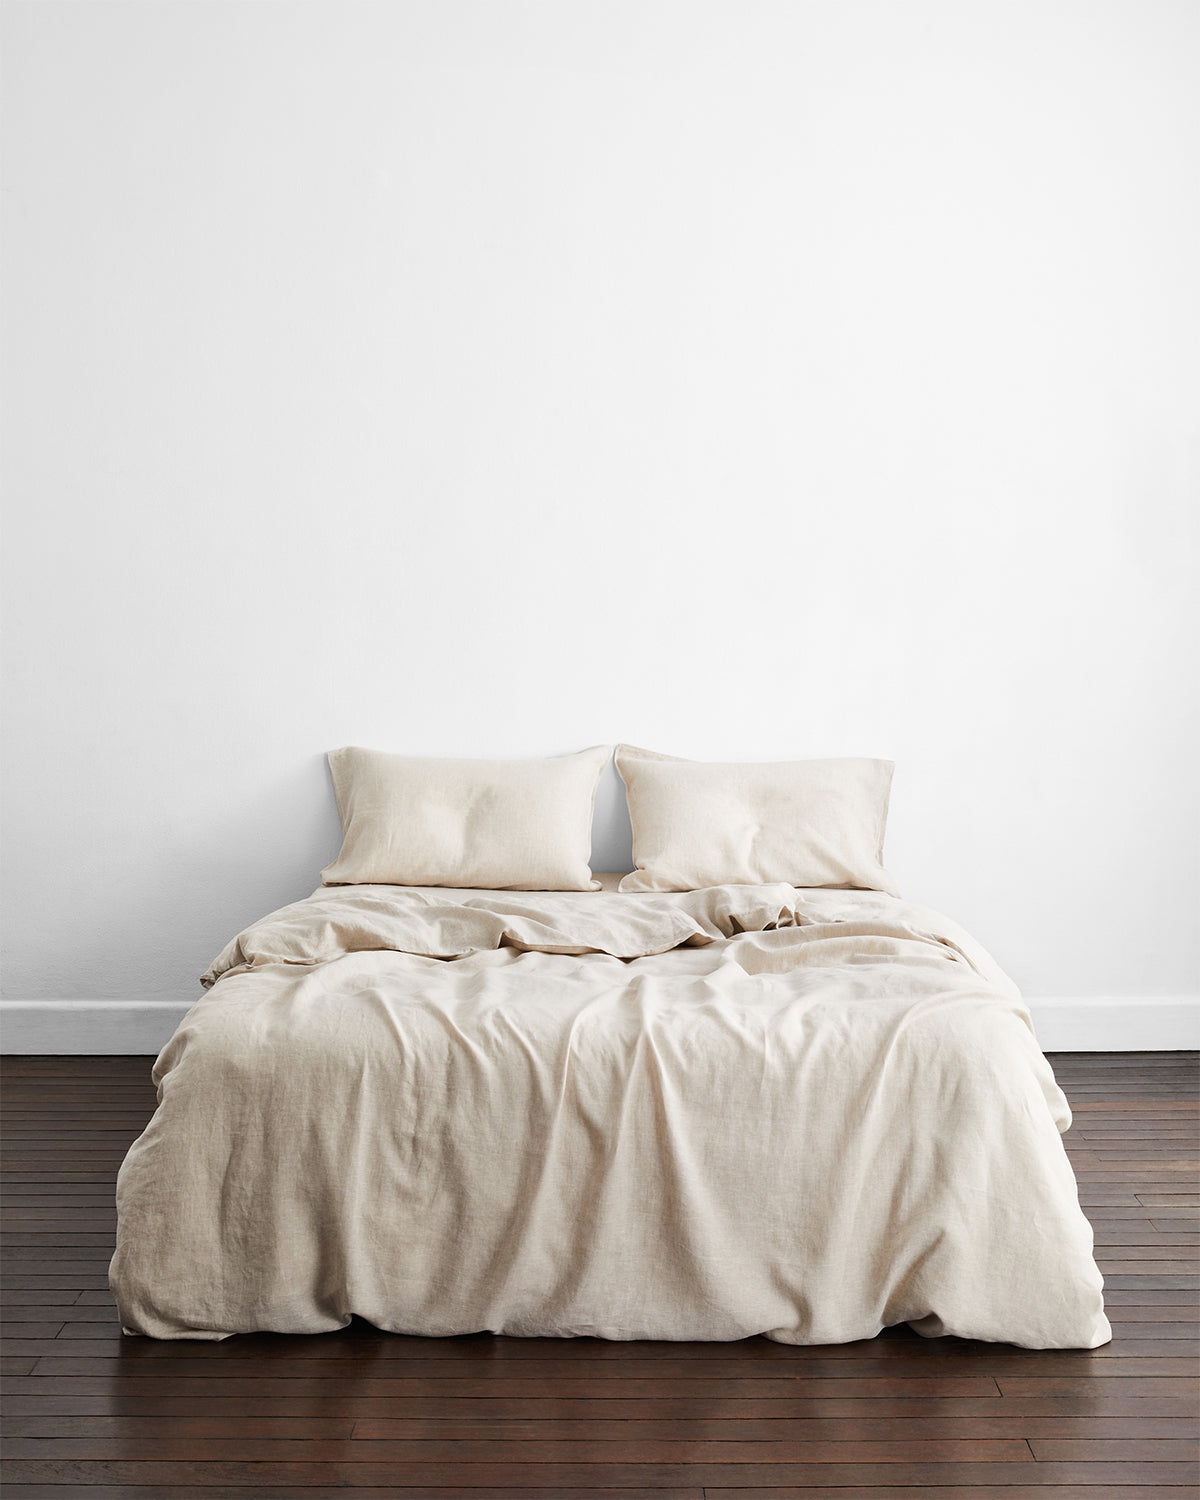 100% Flax Linen Bed Sheets, Linen Duvets